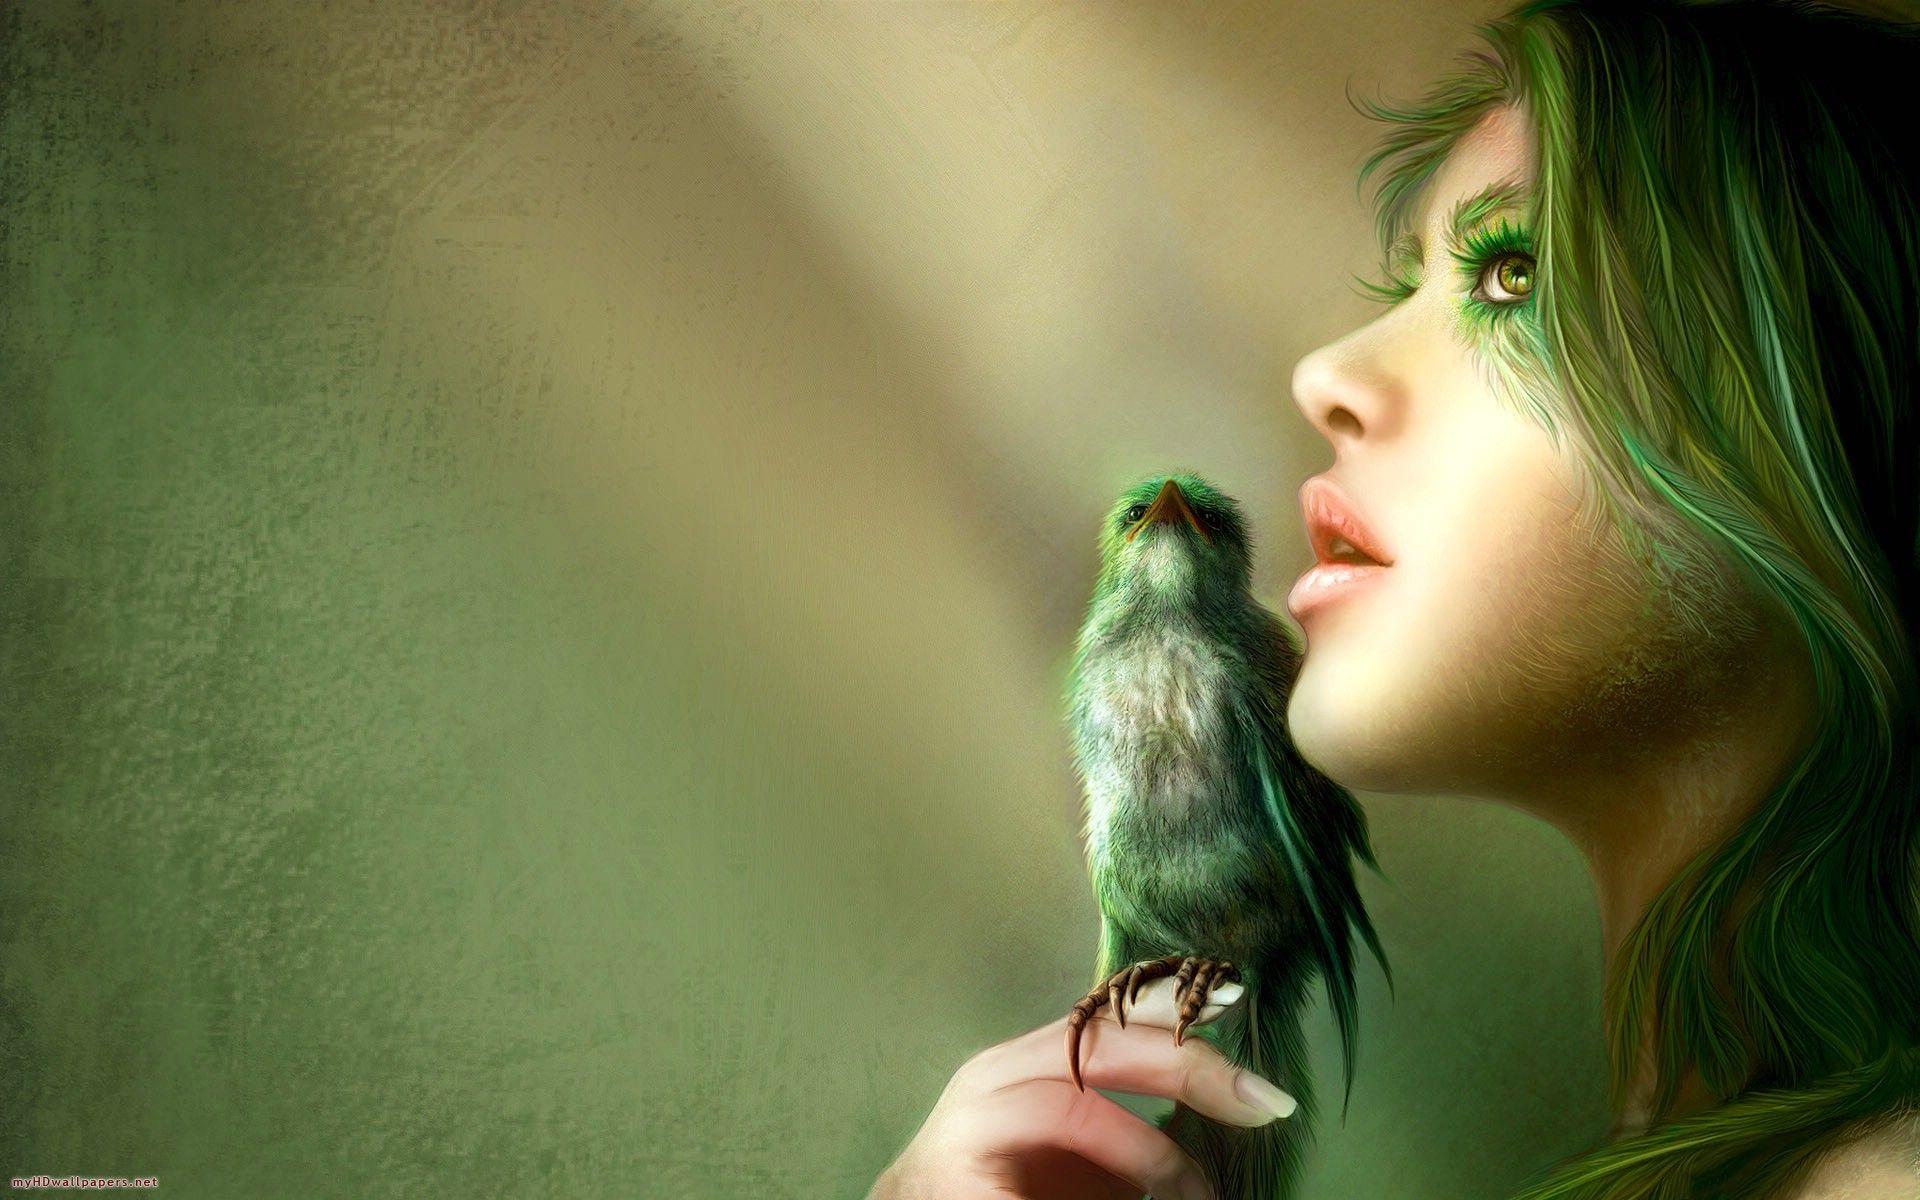 Parrot Girl. Green. Bird wallpaper, Fantasy art, Birds